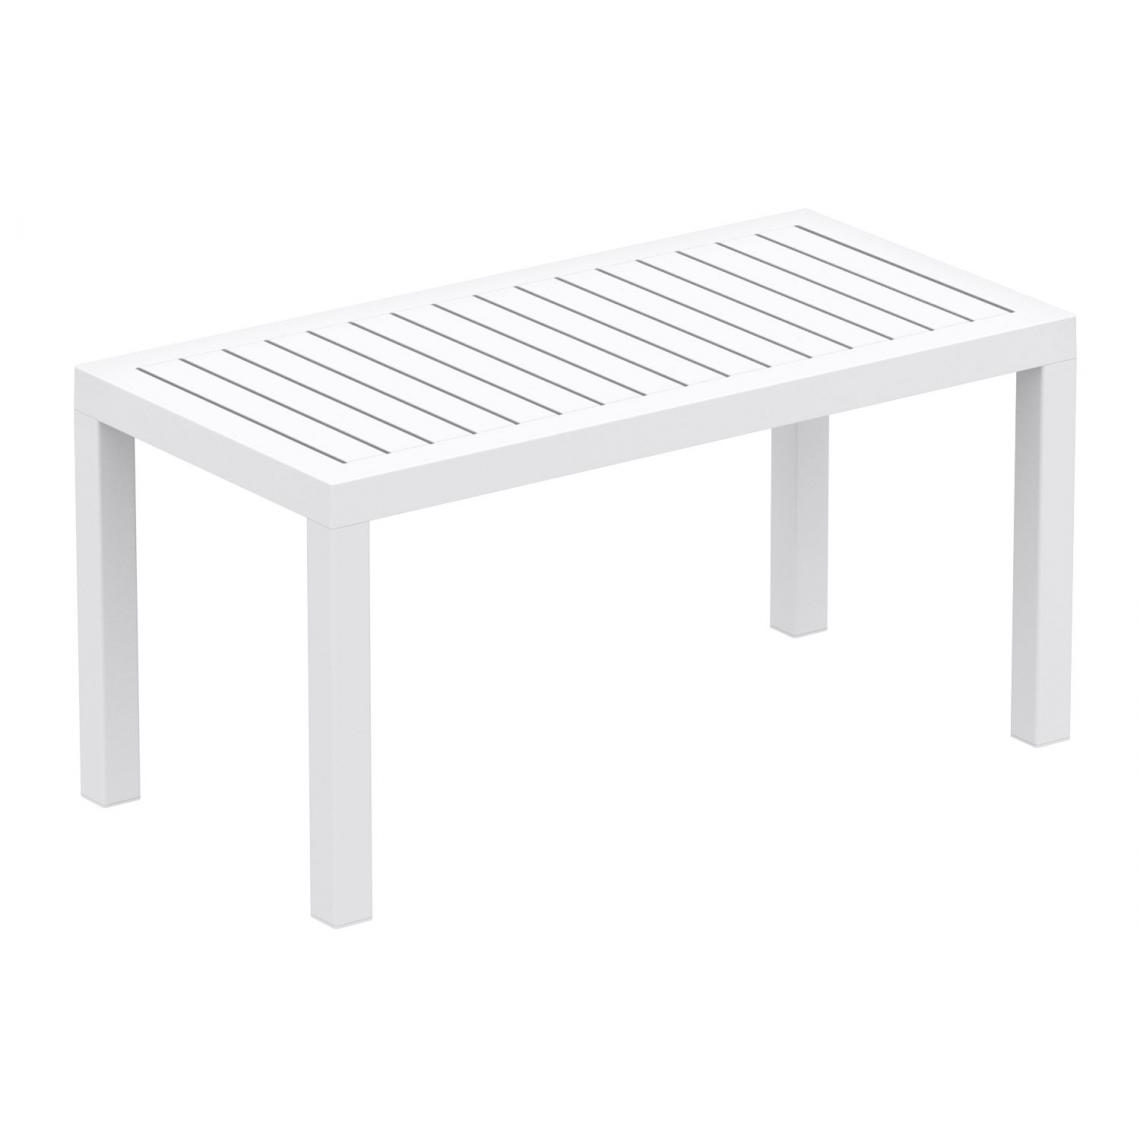 Icaverne - Joli Table basse selection Paris couleur blanc - Ensembles tables et chaises